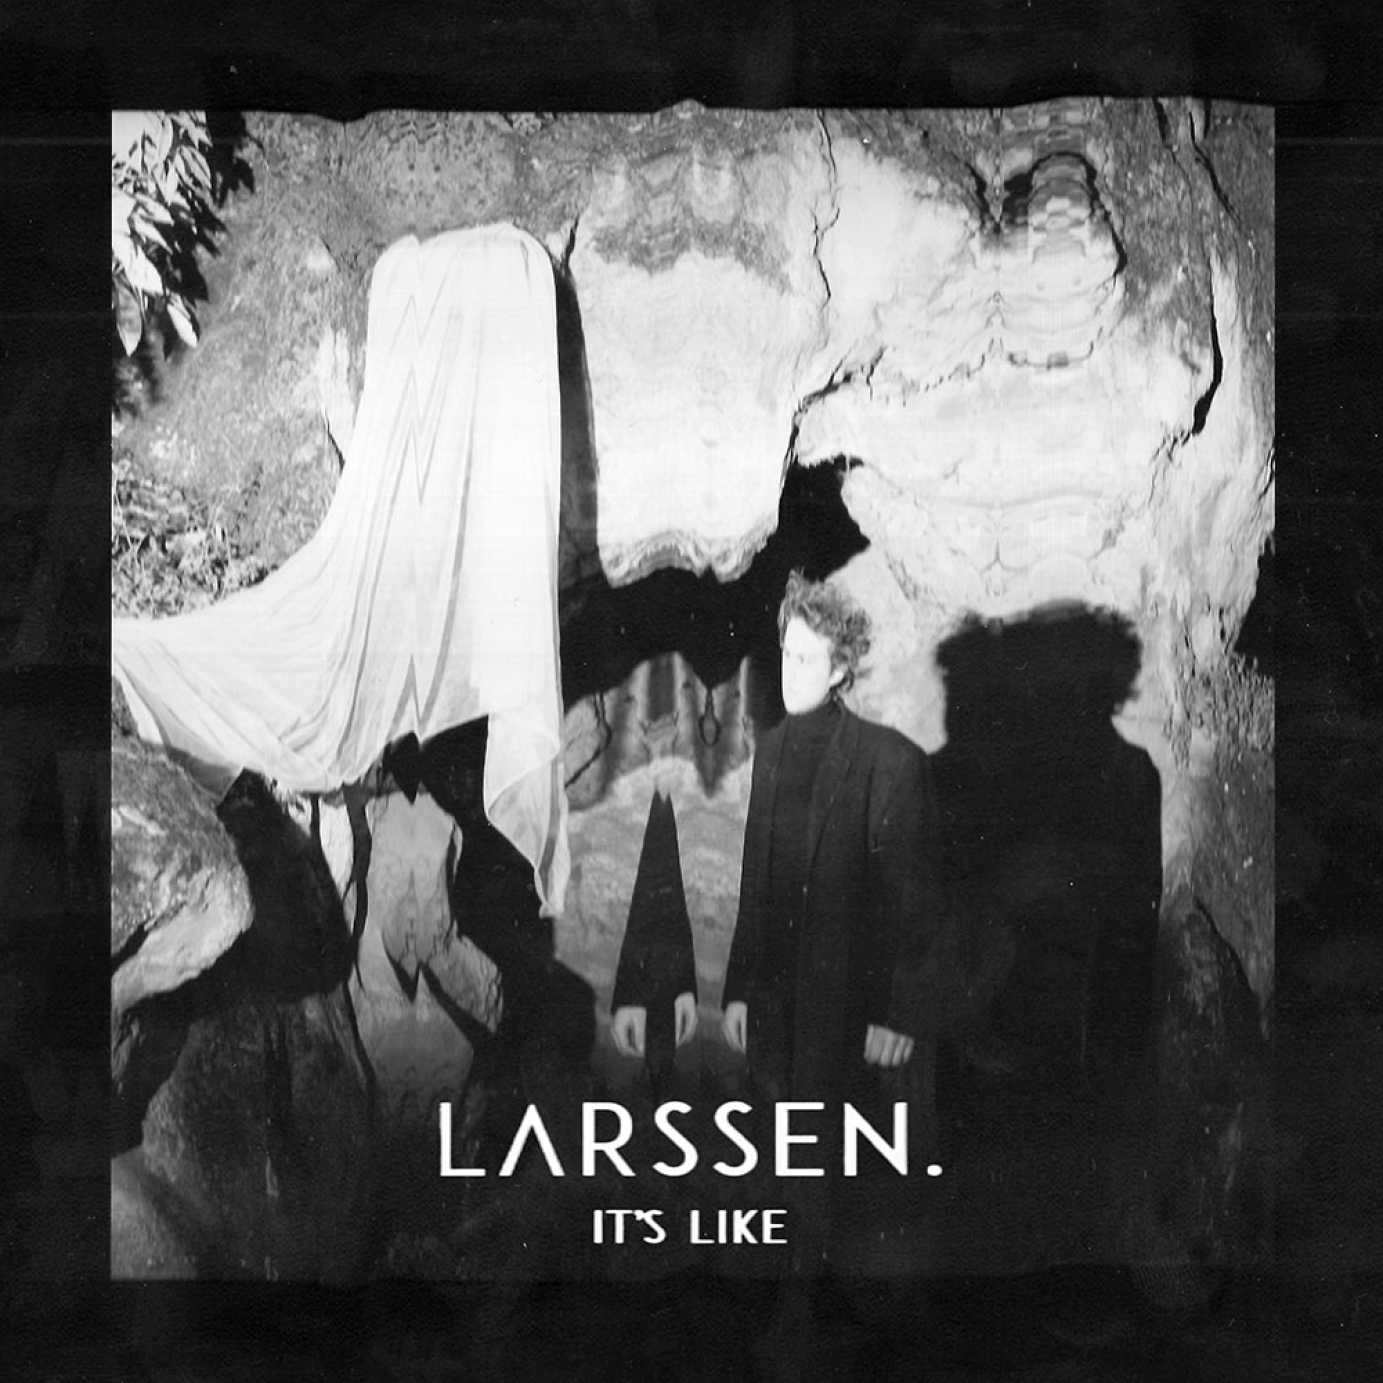 Larssen.